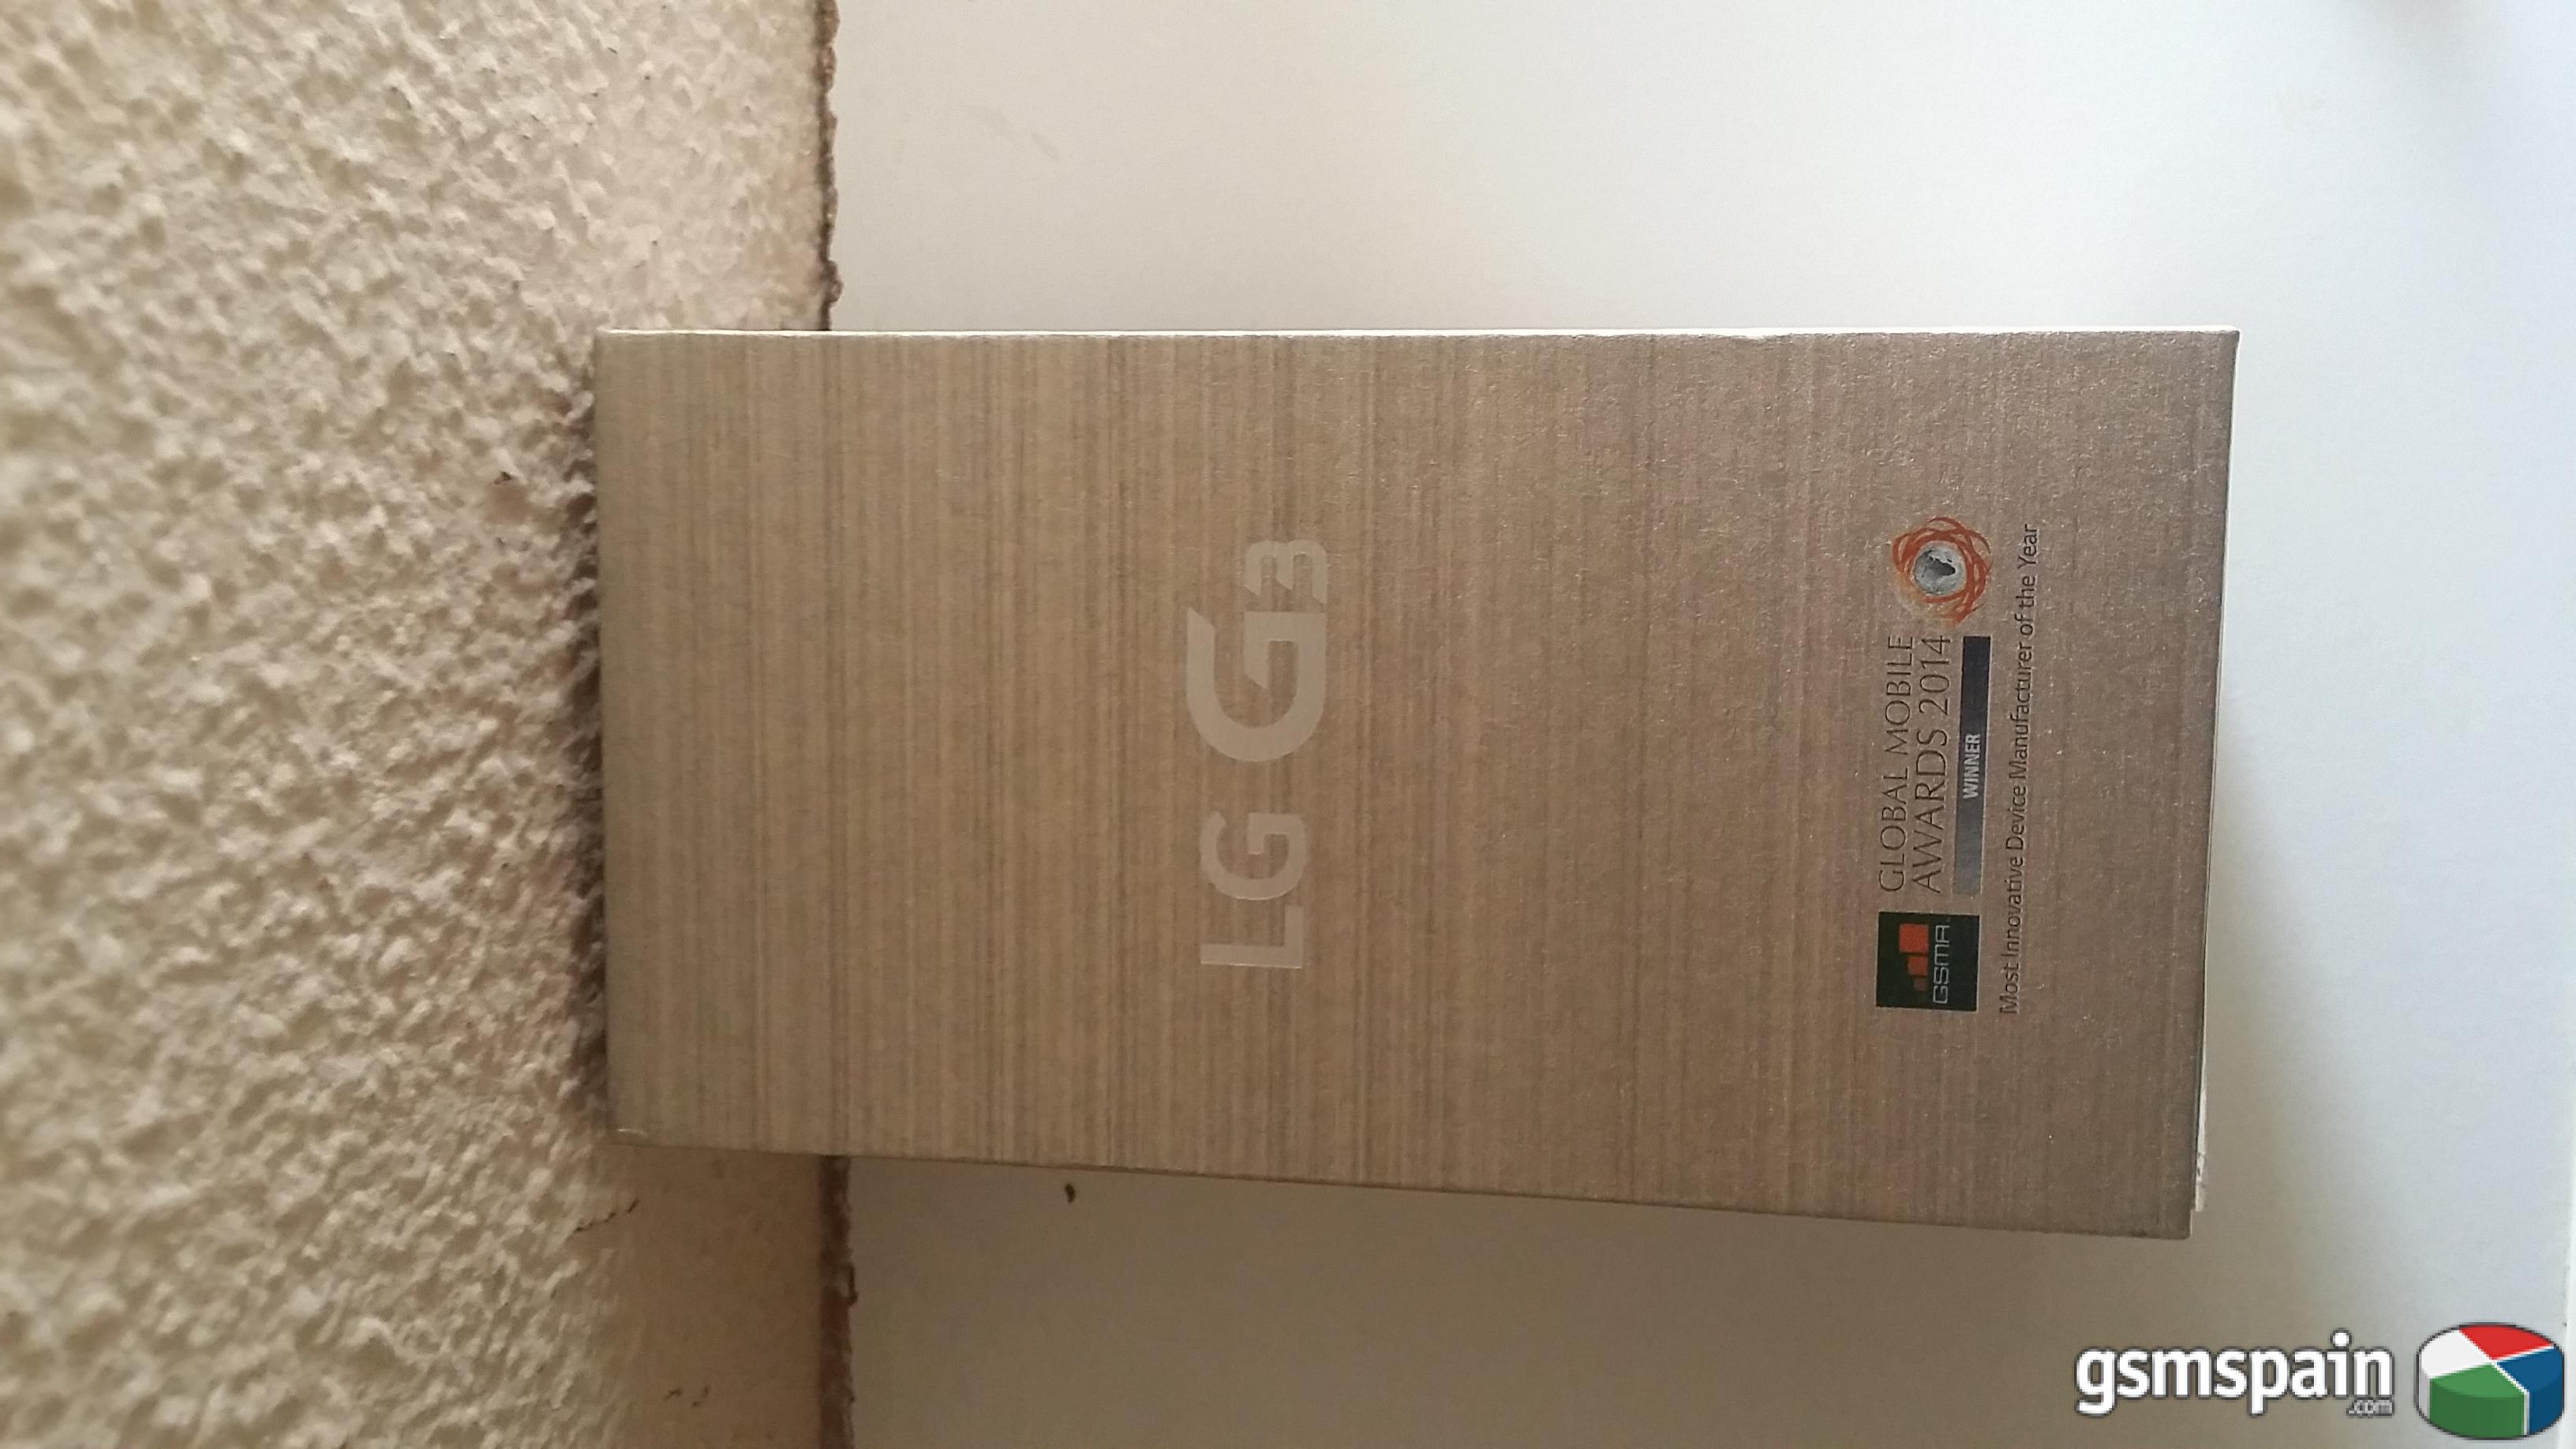 [VENDO] LG G3 Libre de Origen. 16GB. Nuevo a estrenar y precintado